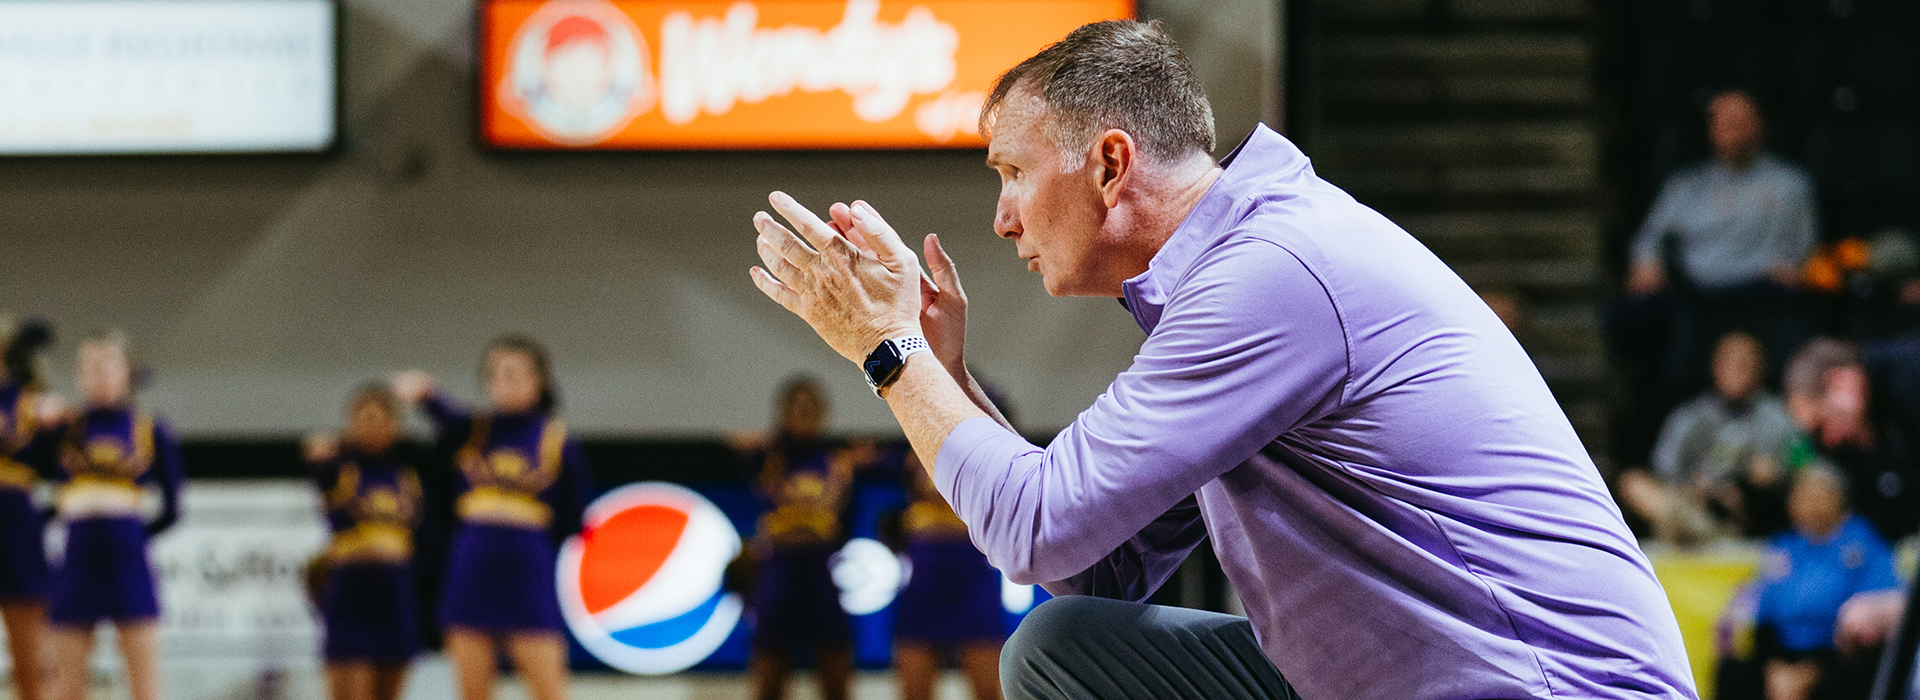 Pelphrey extended as Tech men's basketball head coach through 2026-27 season